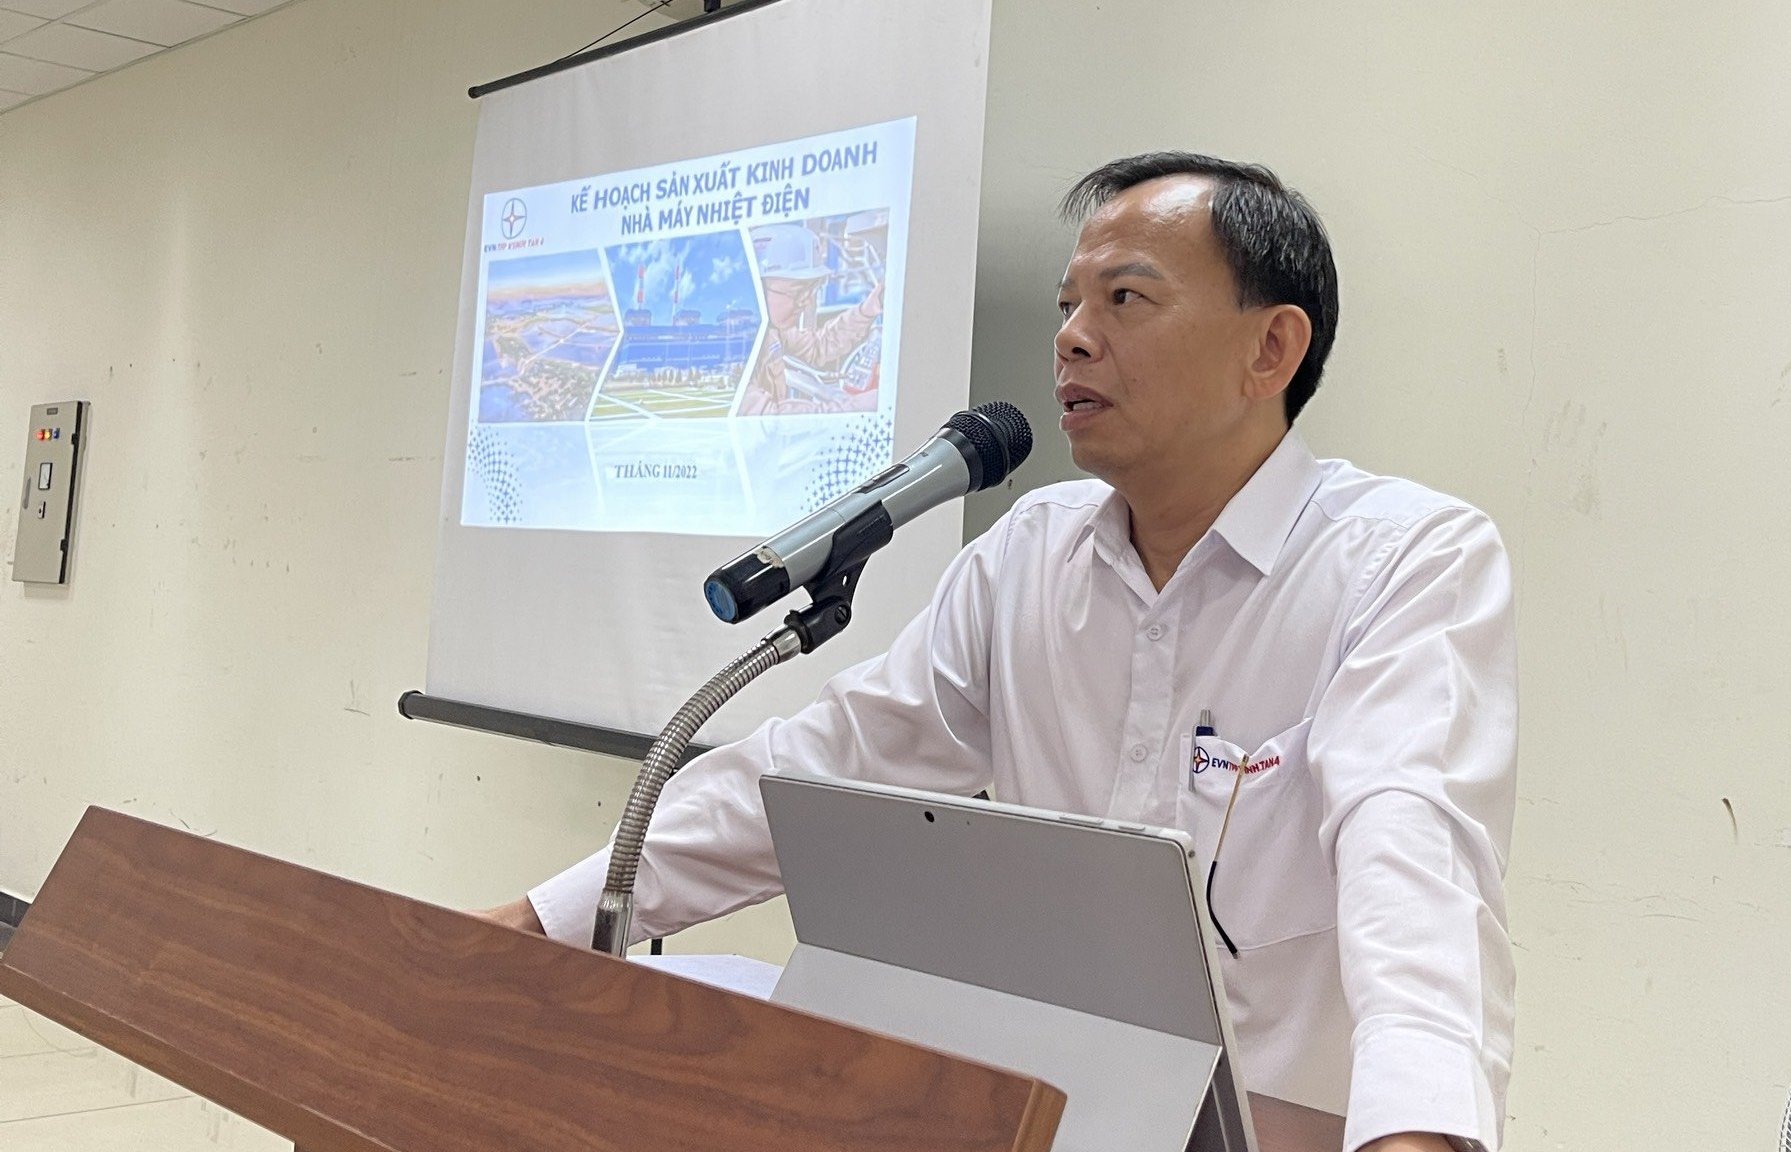 Ông Vũ Thanh Hải – Giám đốc Nhà máy giảng dạy chuyên đề về kế hoạch sản xuất, kinh doanh. Ảnh Vĩnh Tân